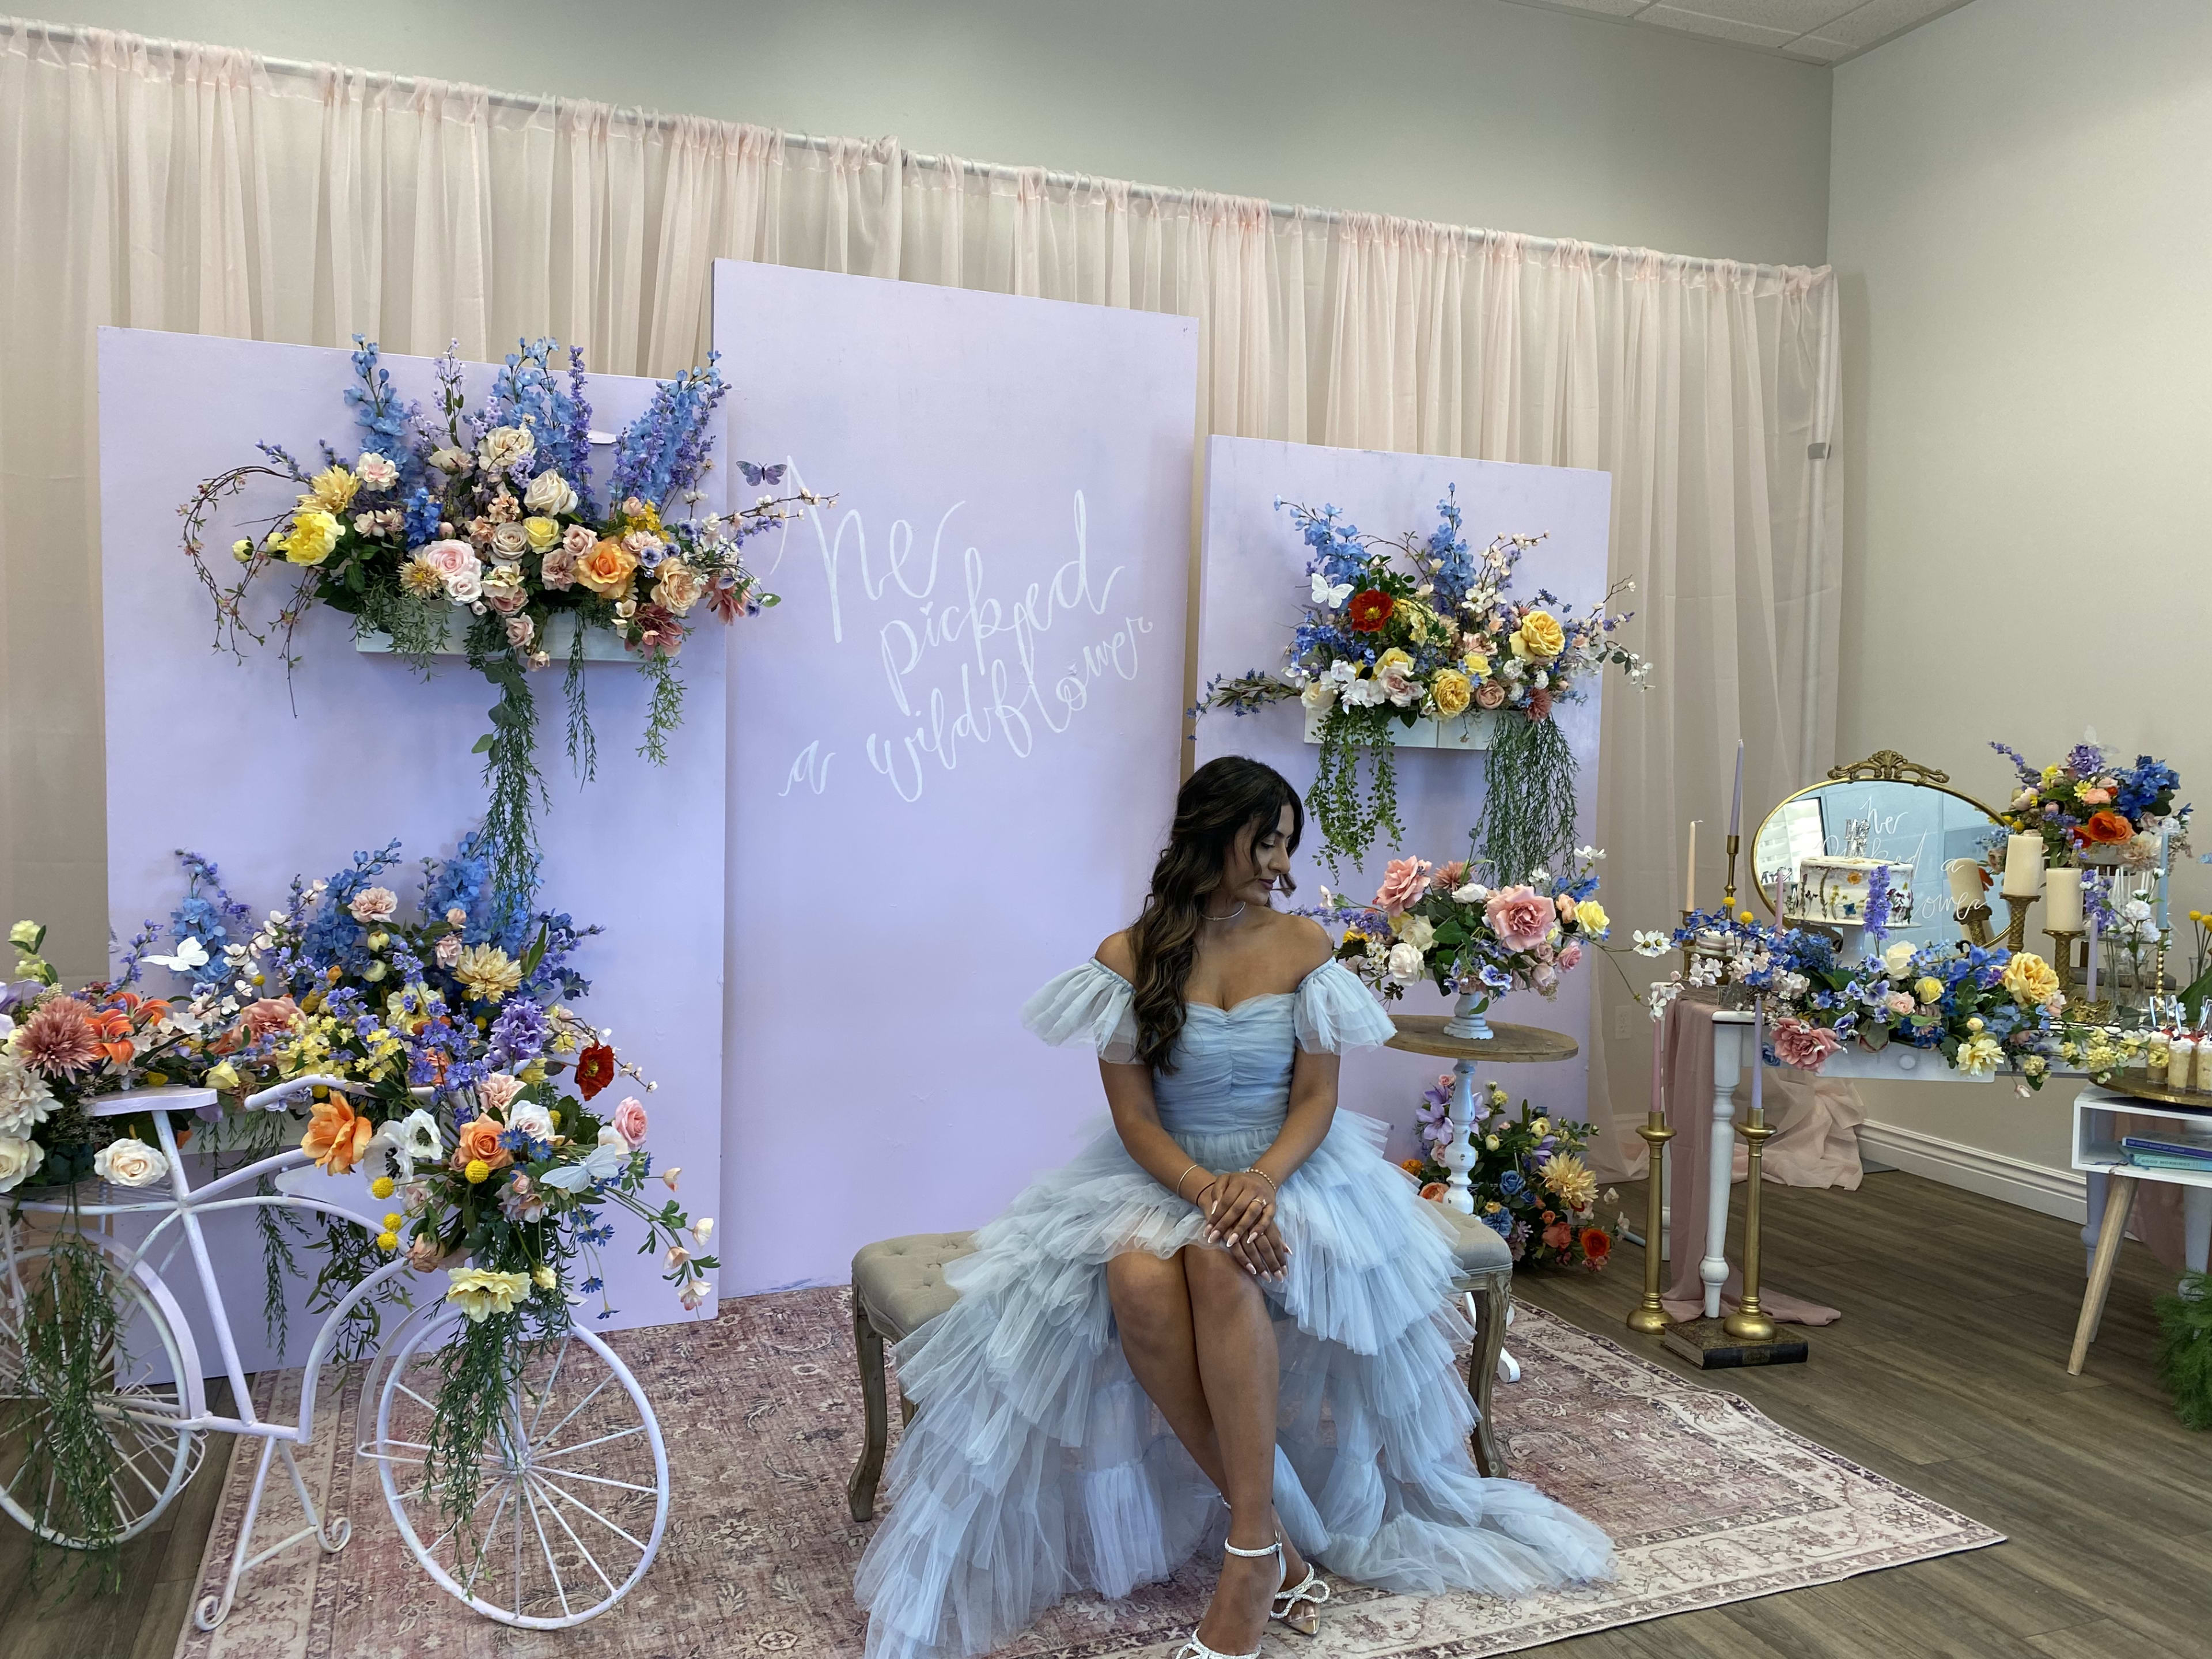 Una futura novia sentada en una silla admirando un jardín de flores moradas y azules para su despedida de soltera en primavera.